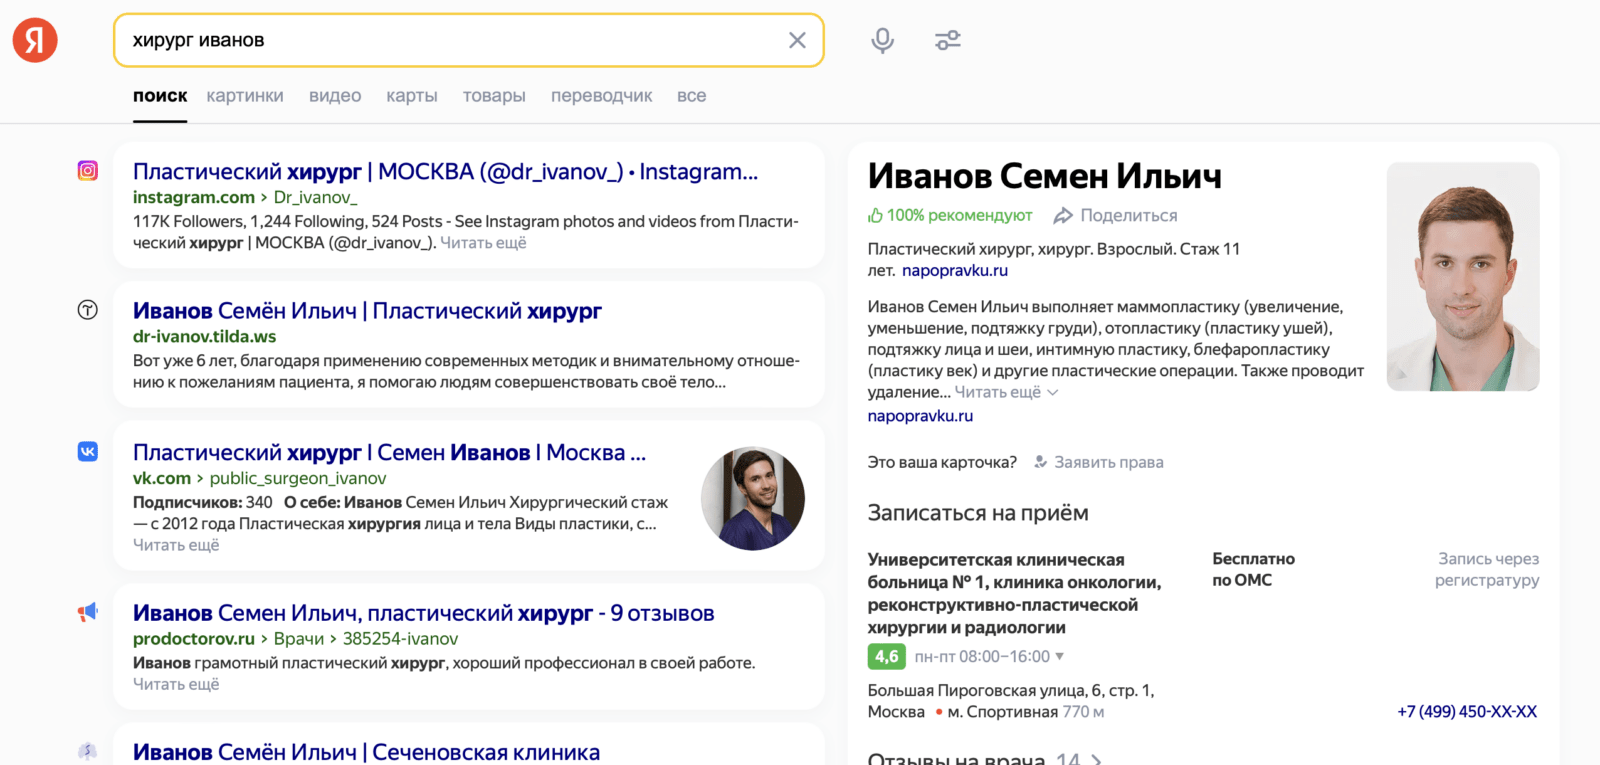 В Яндексе появились подтверждённые профили докторов